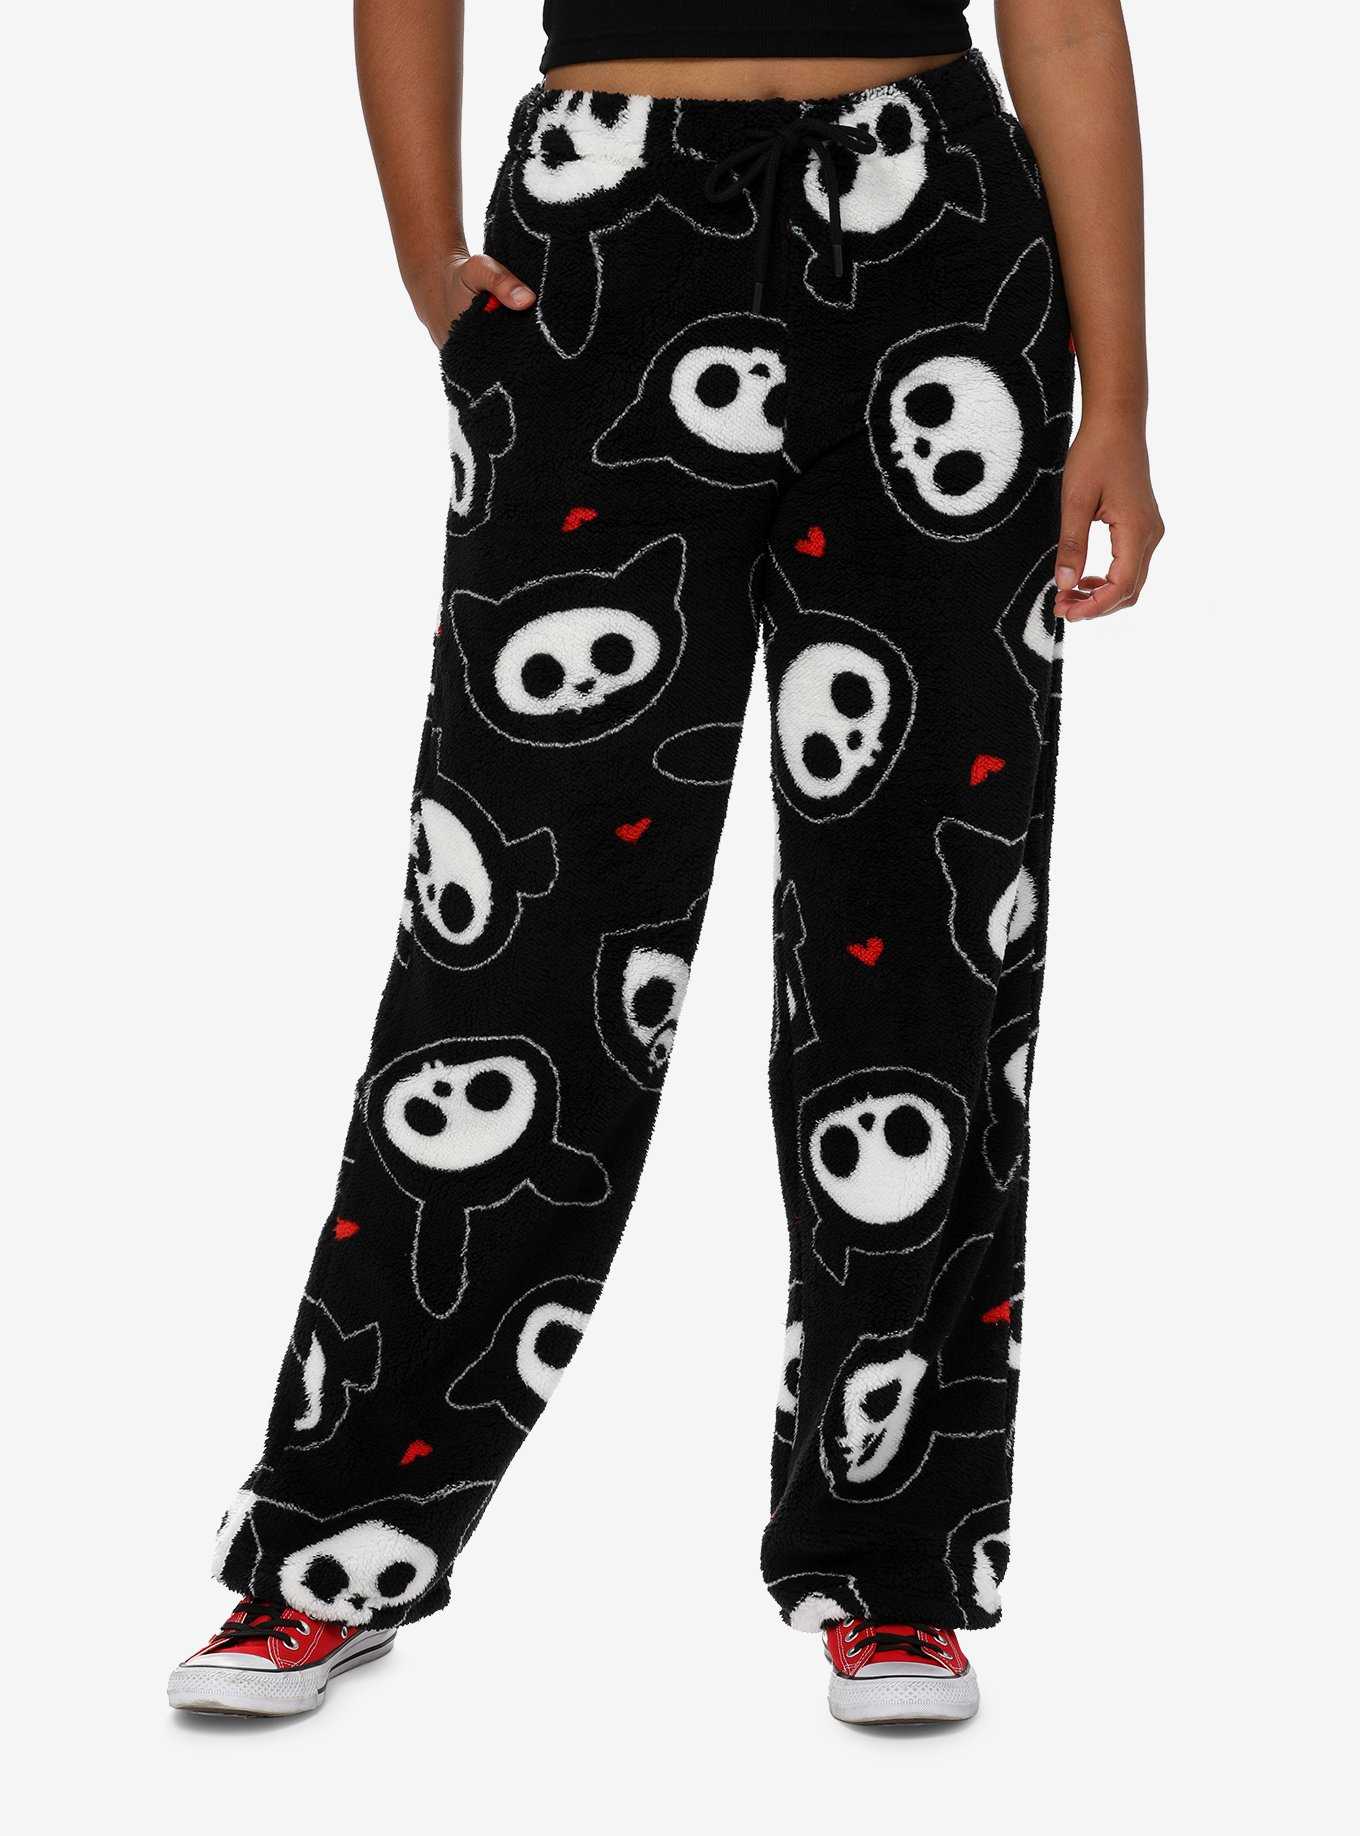 Buy Animal Shadow Pajama Pant